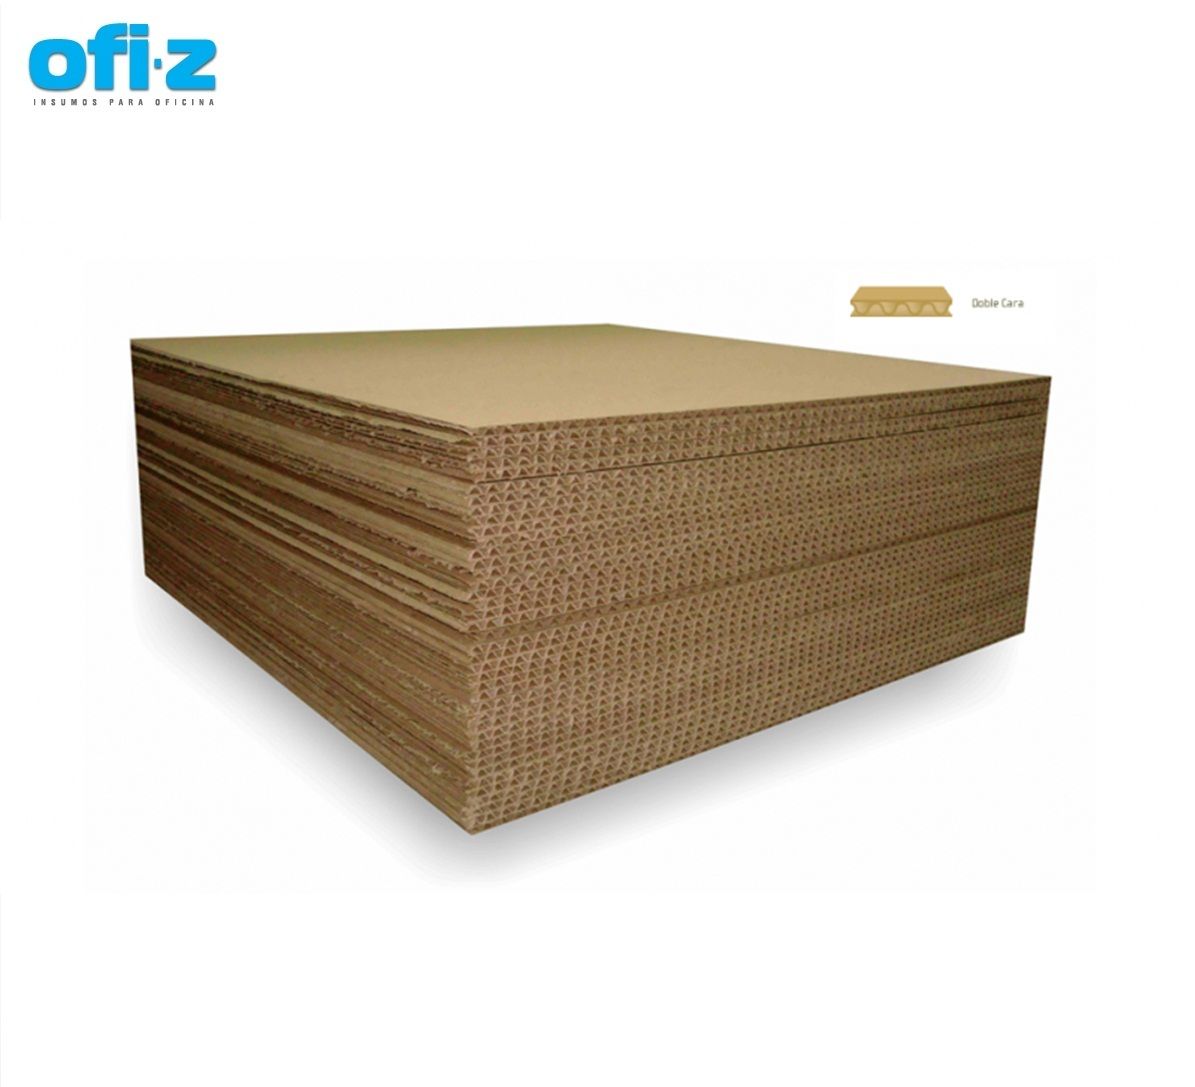 Plancha de carton hoja simple  (1,00 x 1,20mts)